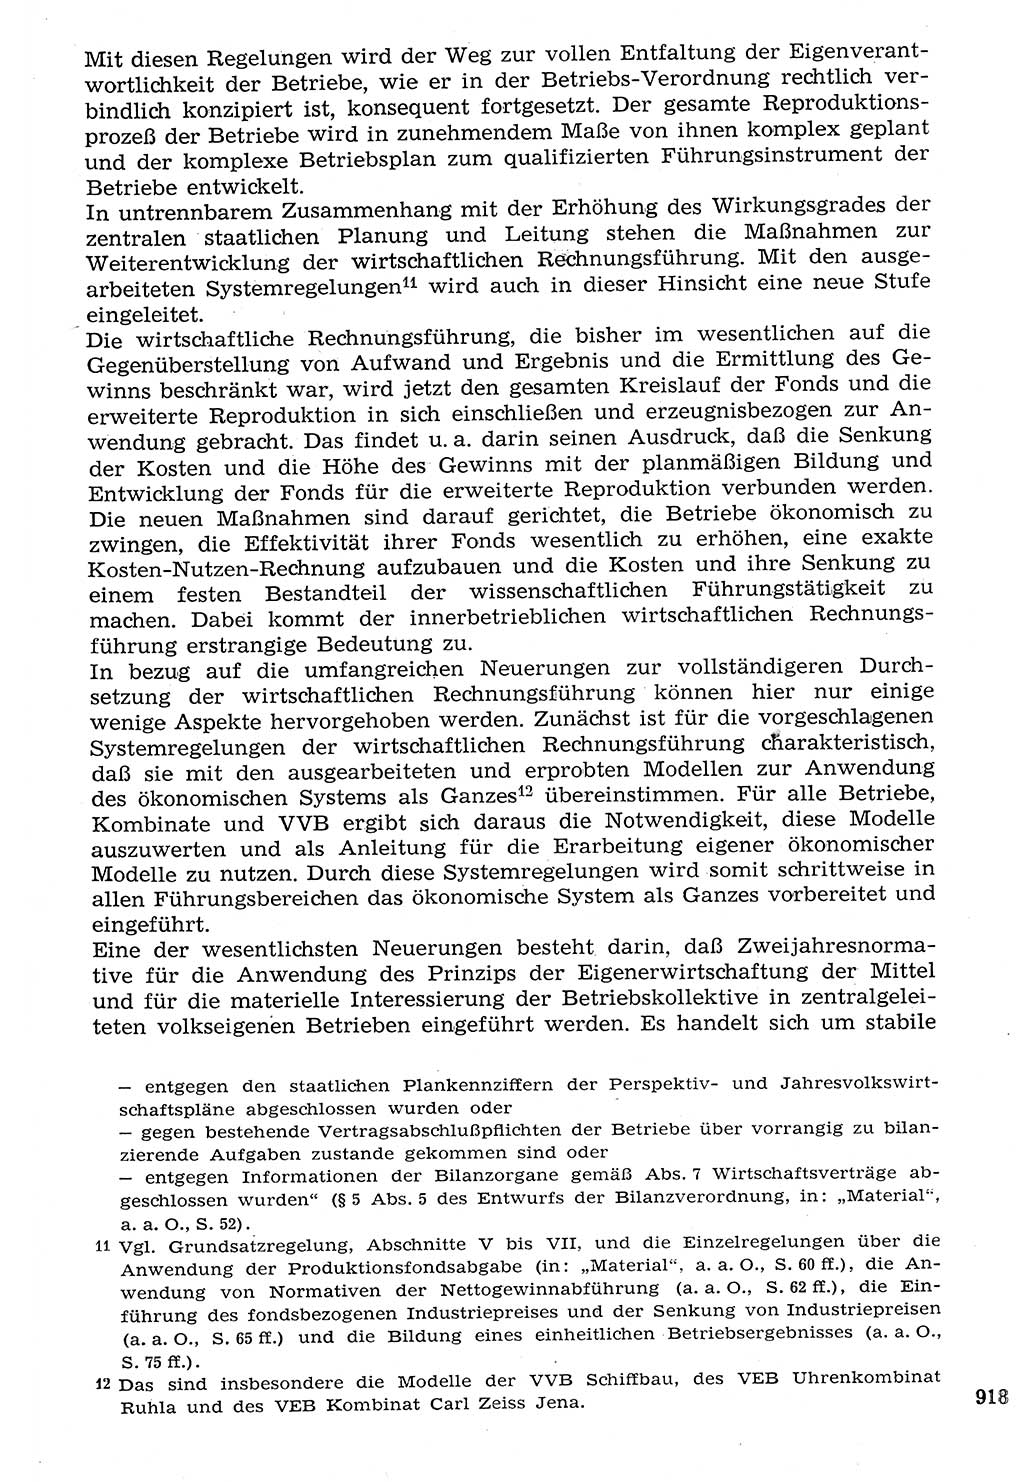 Staat und Recht (StuR), 17. Jahrgang [Deutsche Demokratische Republik (DDR)] 1968, Seite 918 (StuR DDR 1968, S. 918)